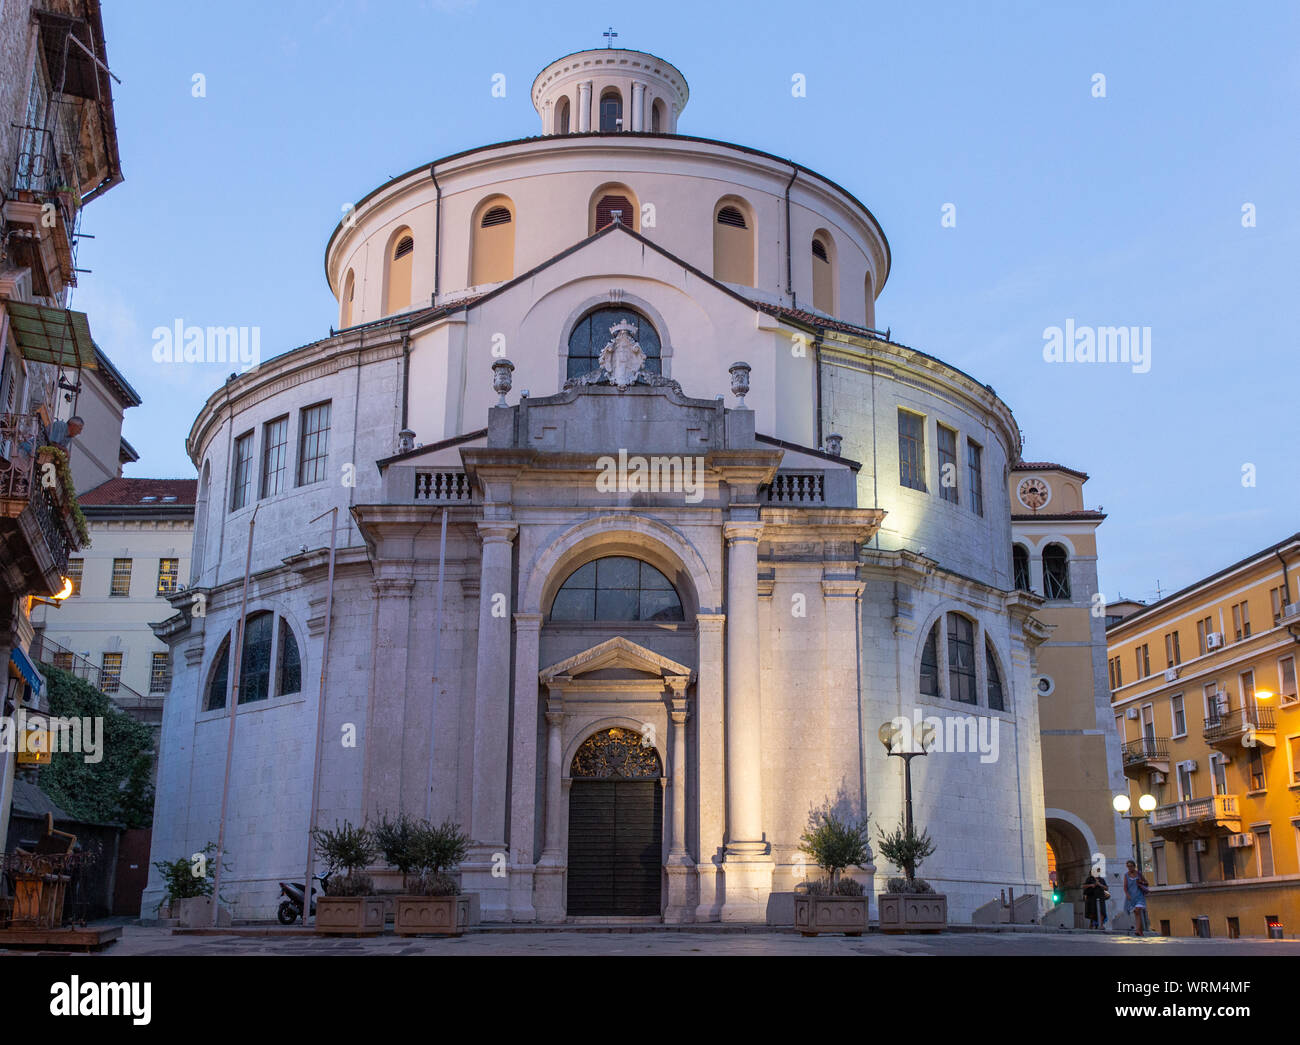 St Vitus (Sv Vida) Römisch-katholische Kathedrale gegründet im Jahre 1638. Rijeka, Kroatien. Die rotunde Architektur ist selten für die Region. Stockfoto